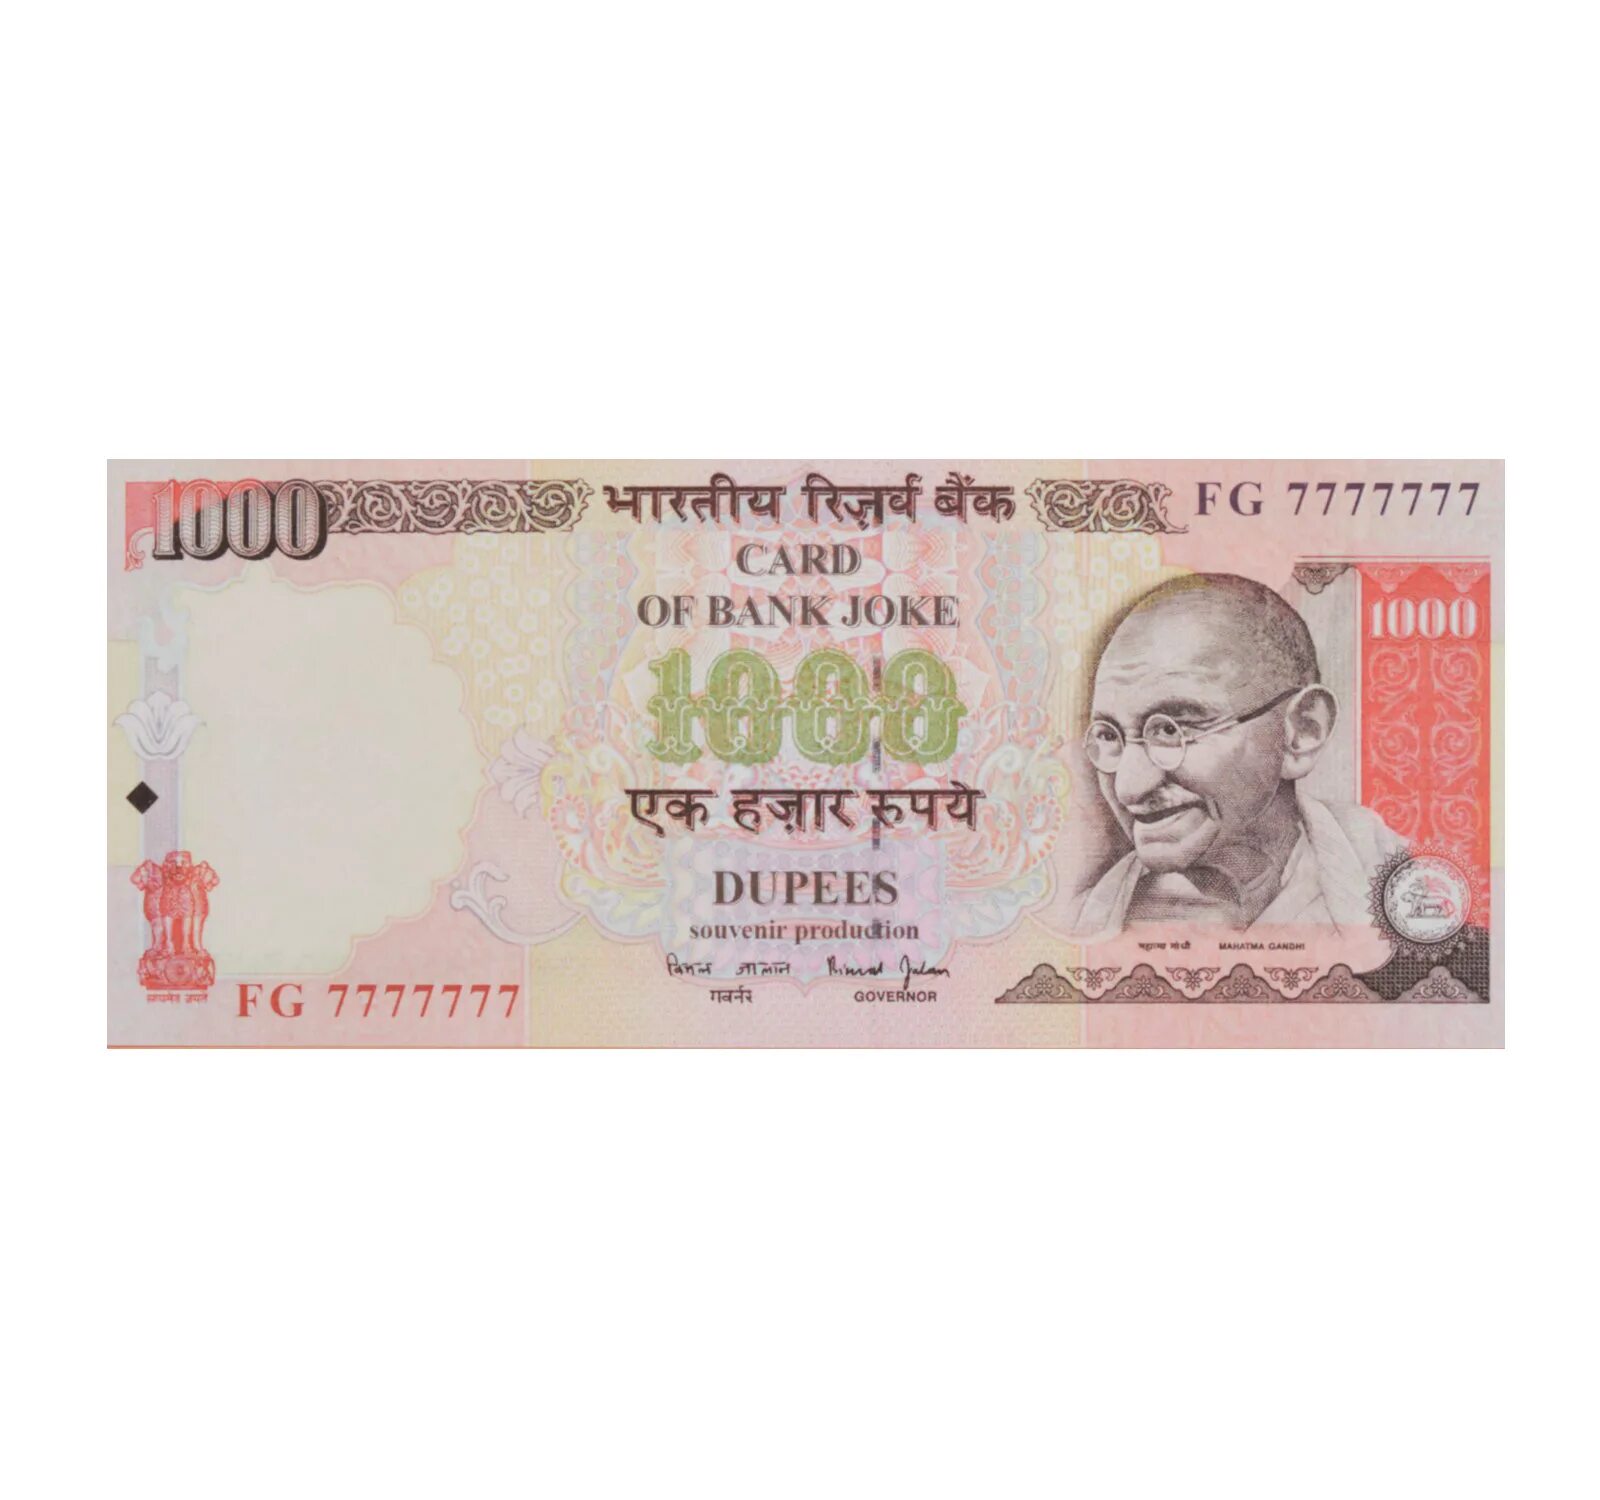 INR 1000. 600 Рупий в рублях. 900 Рупий в рублях. 1000000 Рупий в рублях.